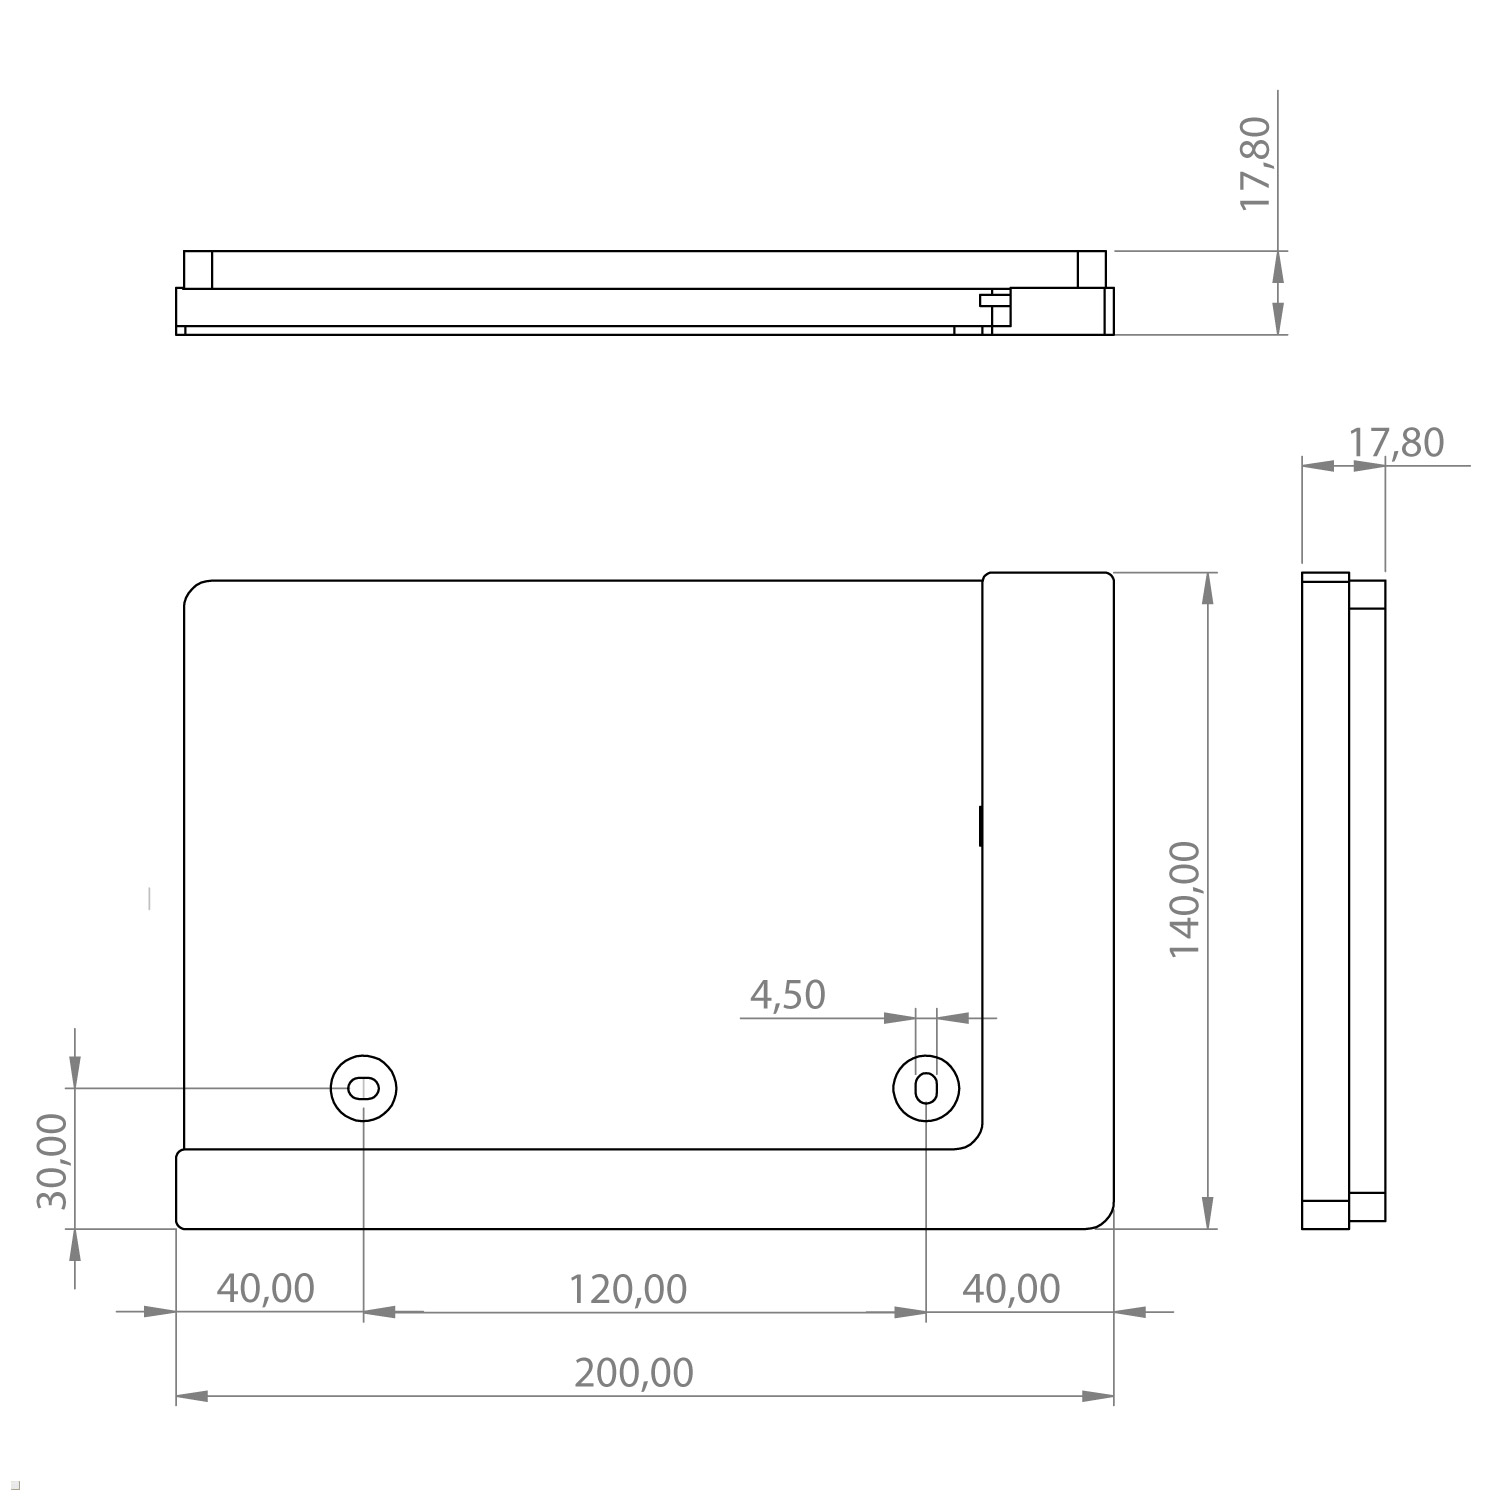 TABLINES TWP mit 9.7 Tablet für schwarz Wandhalterung, Air Ladefunktion Apple 1